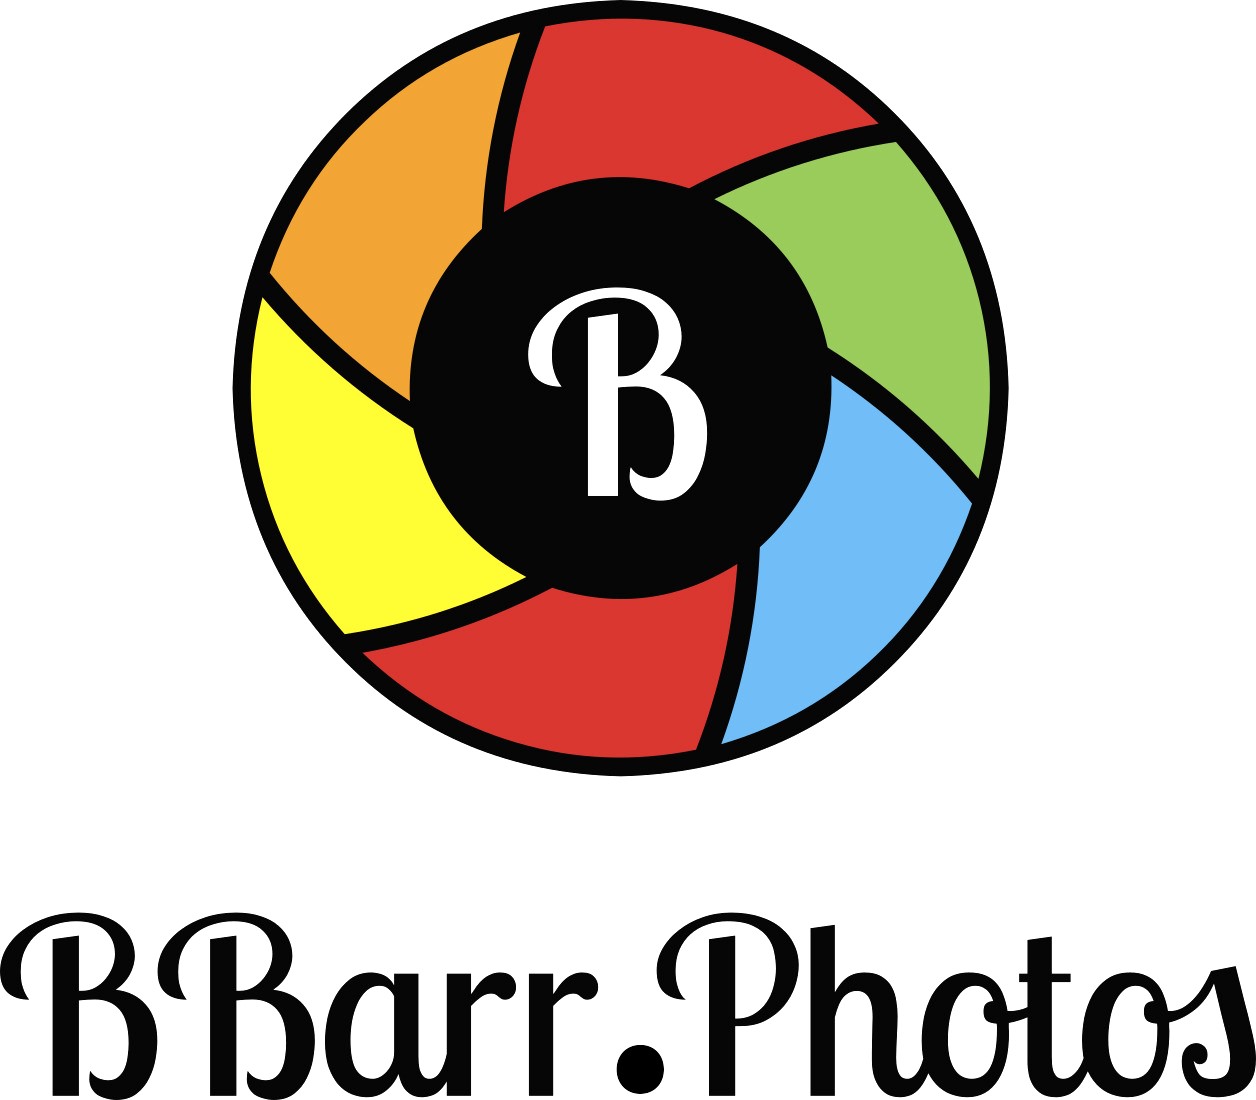 bbarr.photos